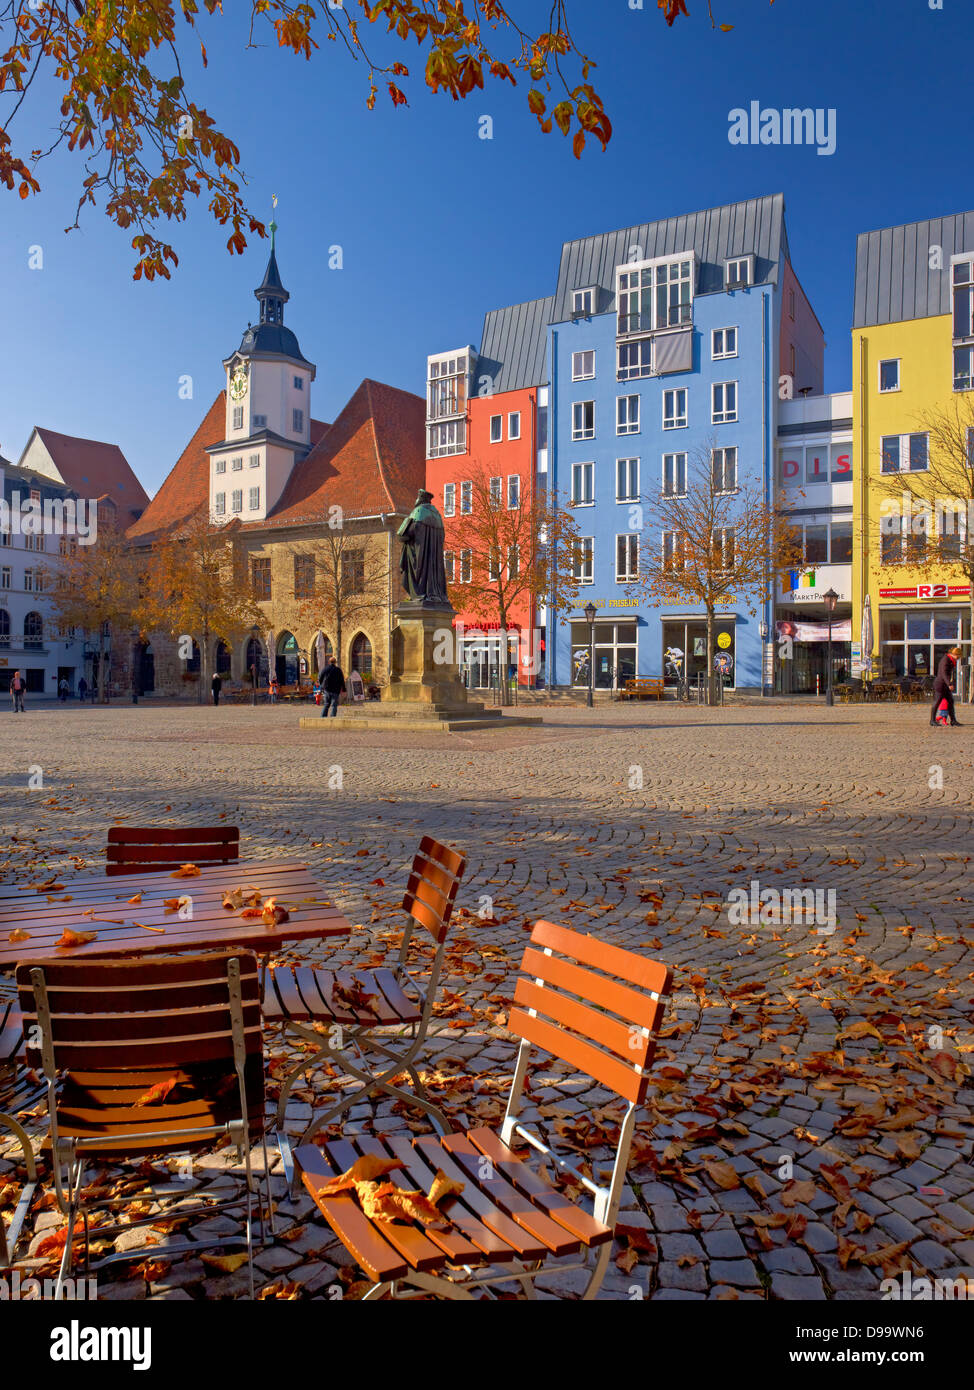 Marktplatz mit dem Rathaus in Jena, Thüringen, Deutschland Stockfoto